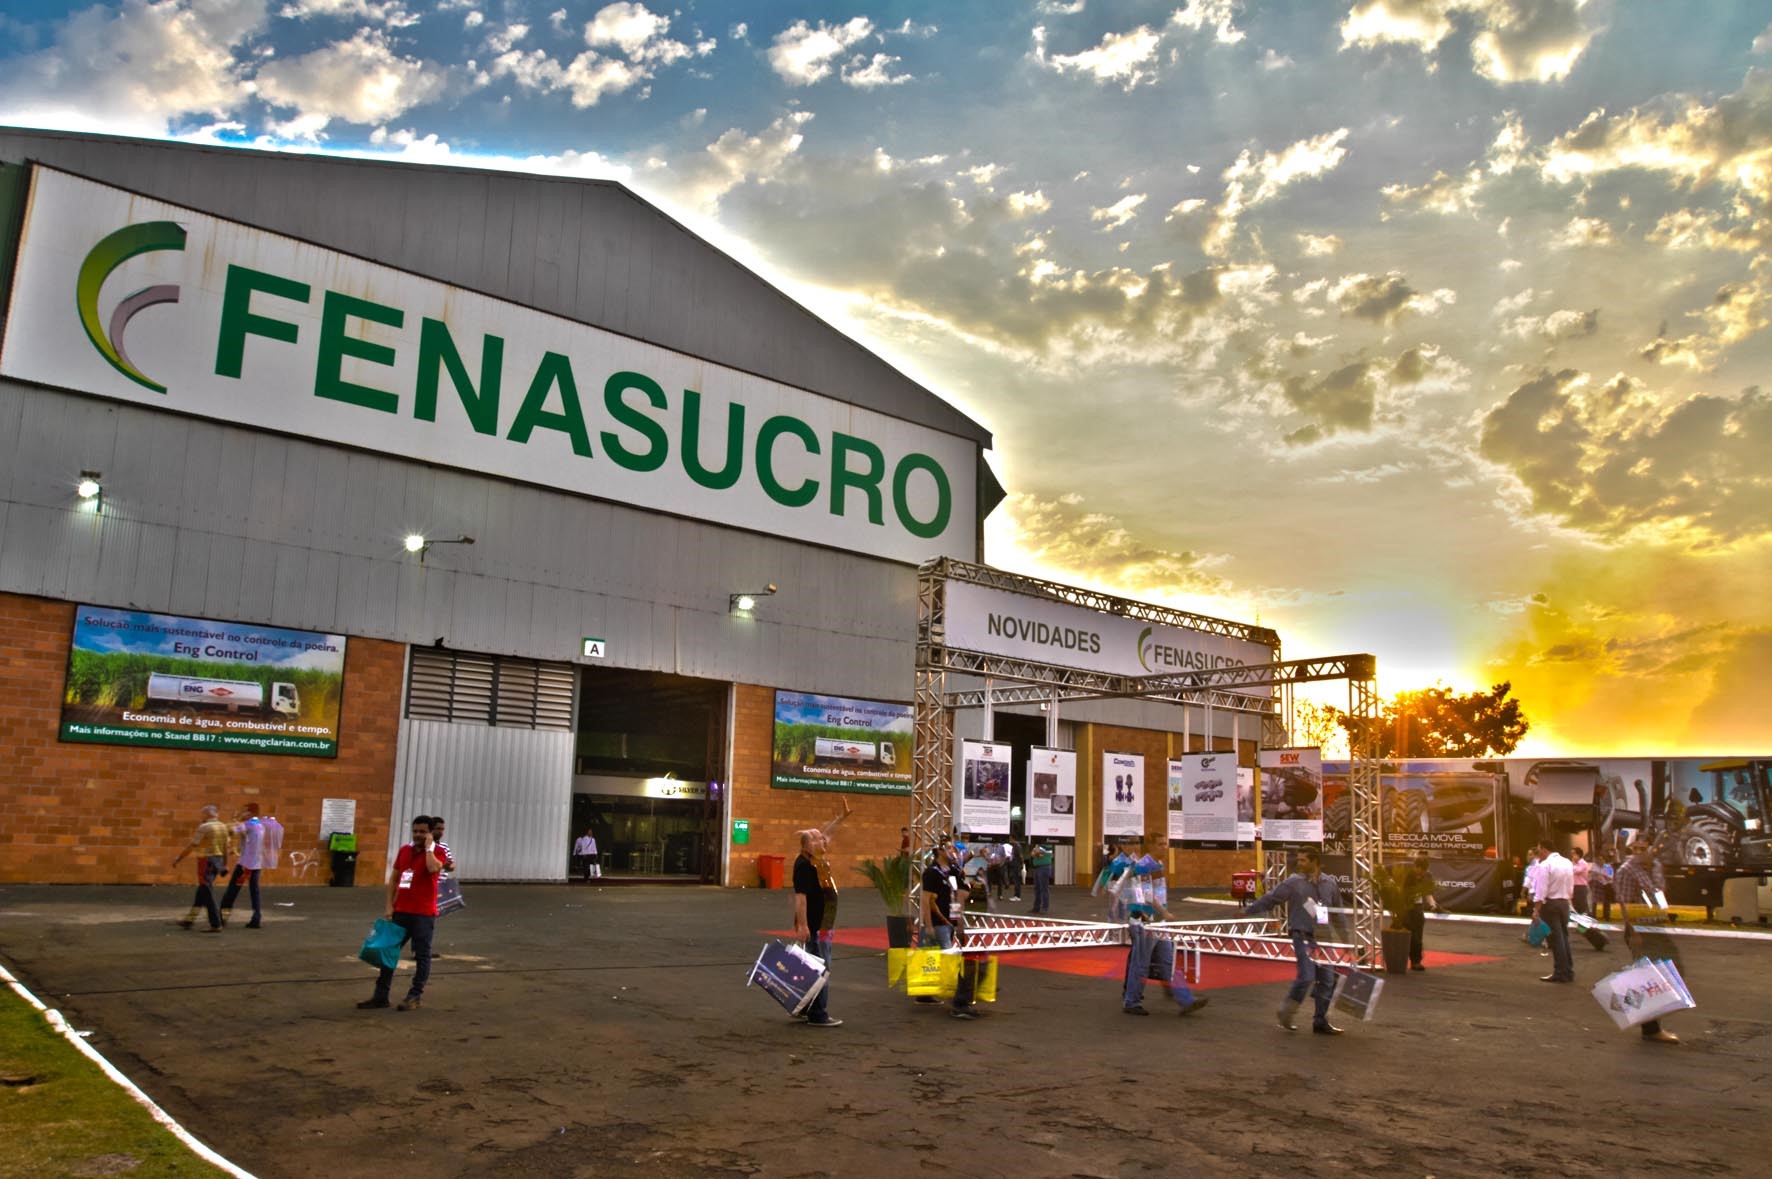 Calaméo - Fenasucro & Agrocana 2016 é apontada como marco da